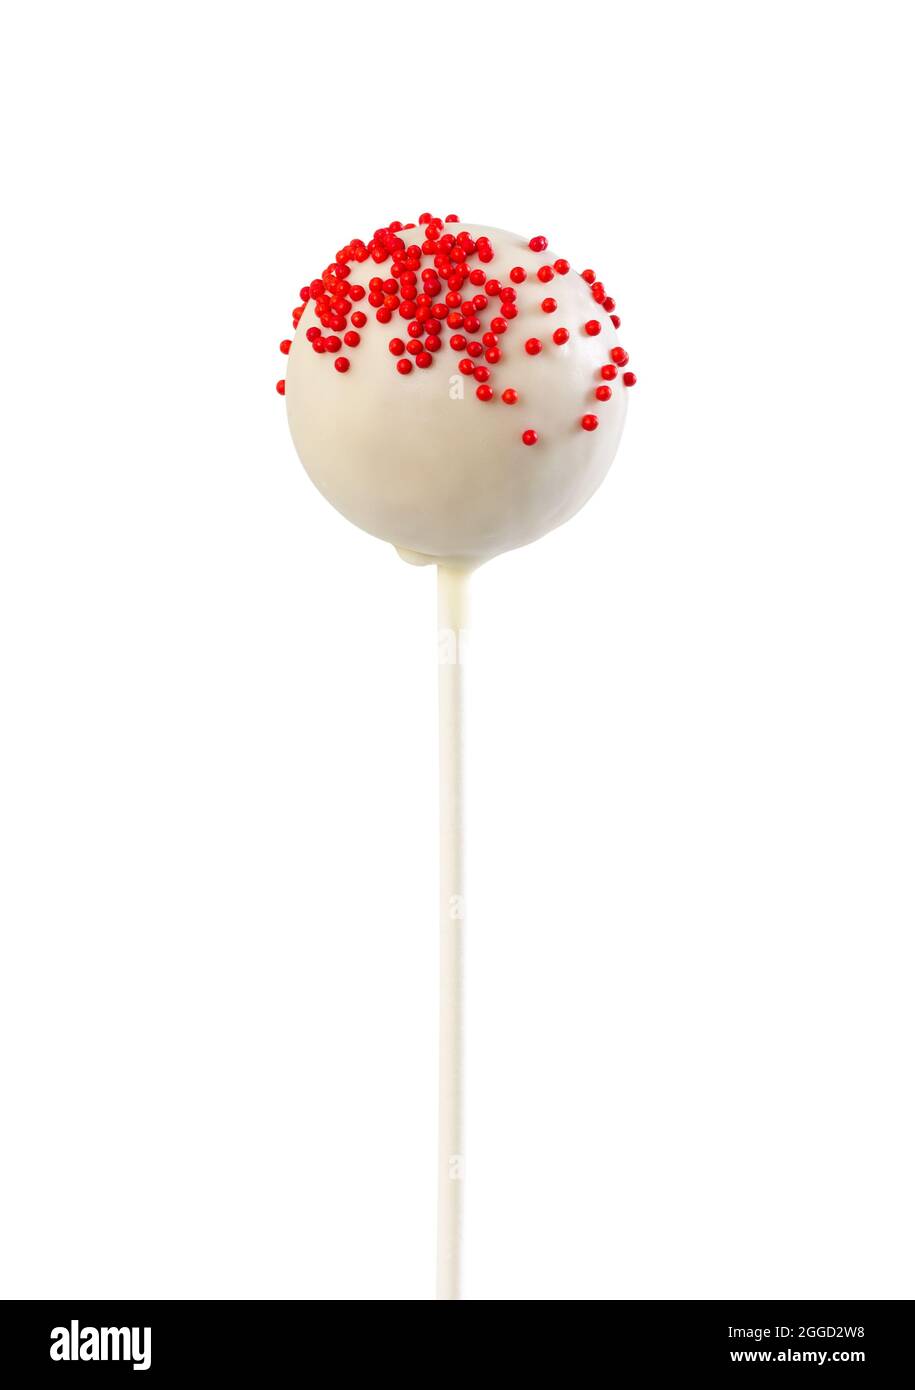 Torta pop in glassa bianca con spolverini rossi isolati su sfondo bianco Foto Stock